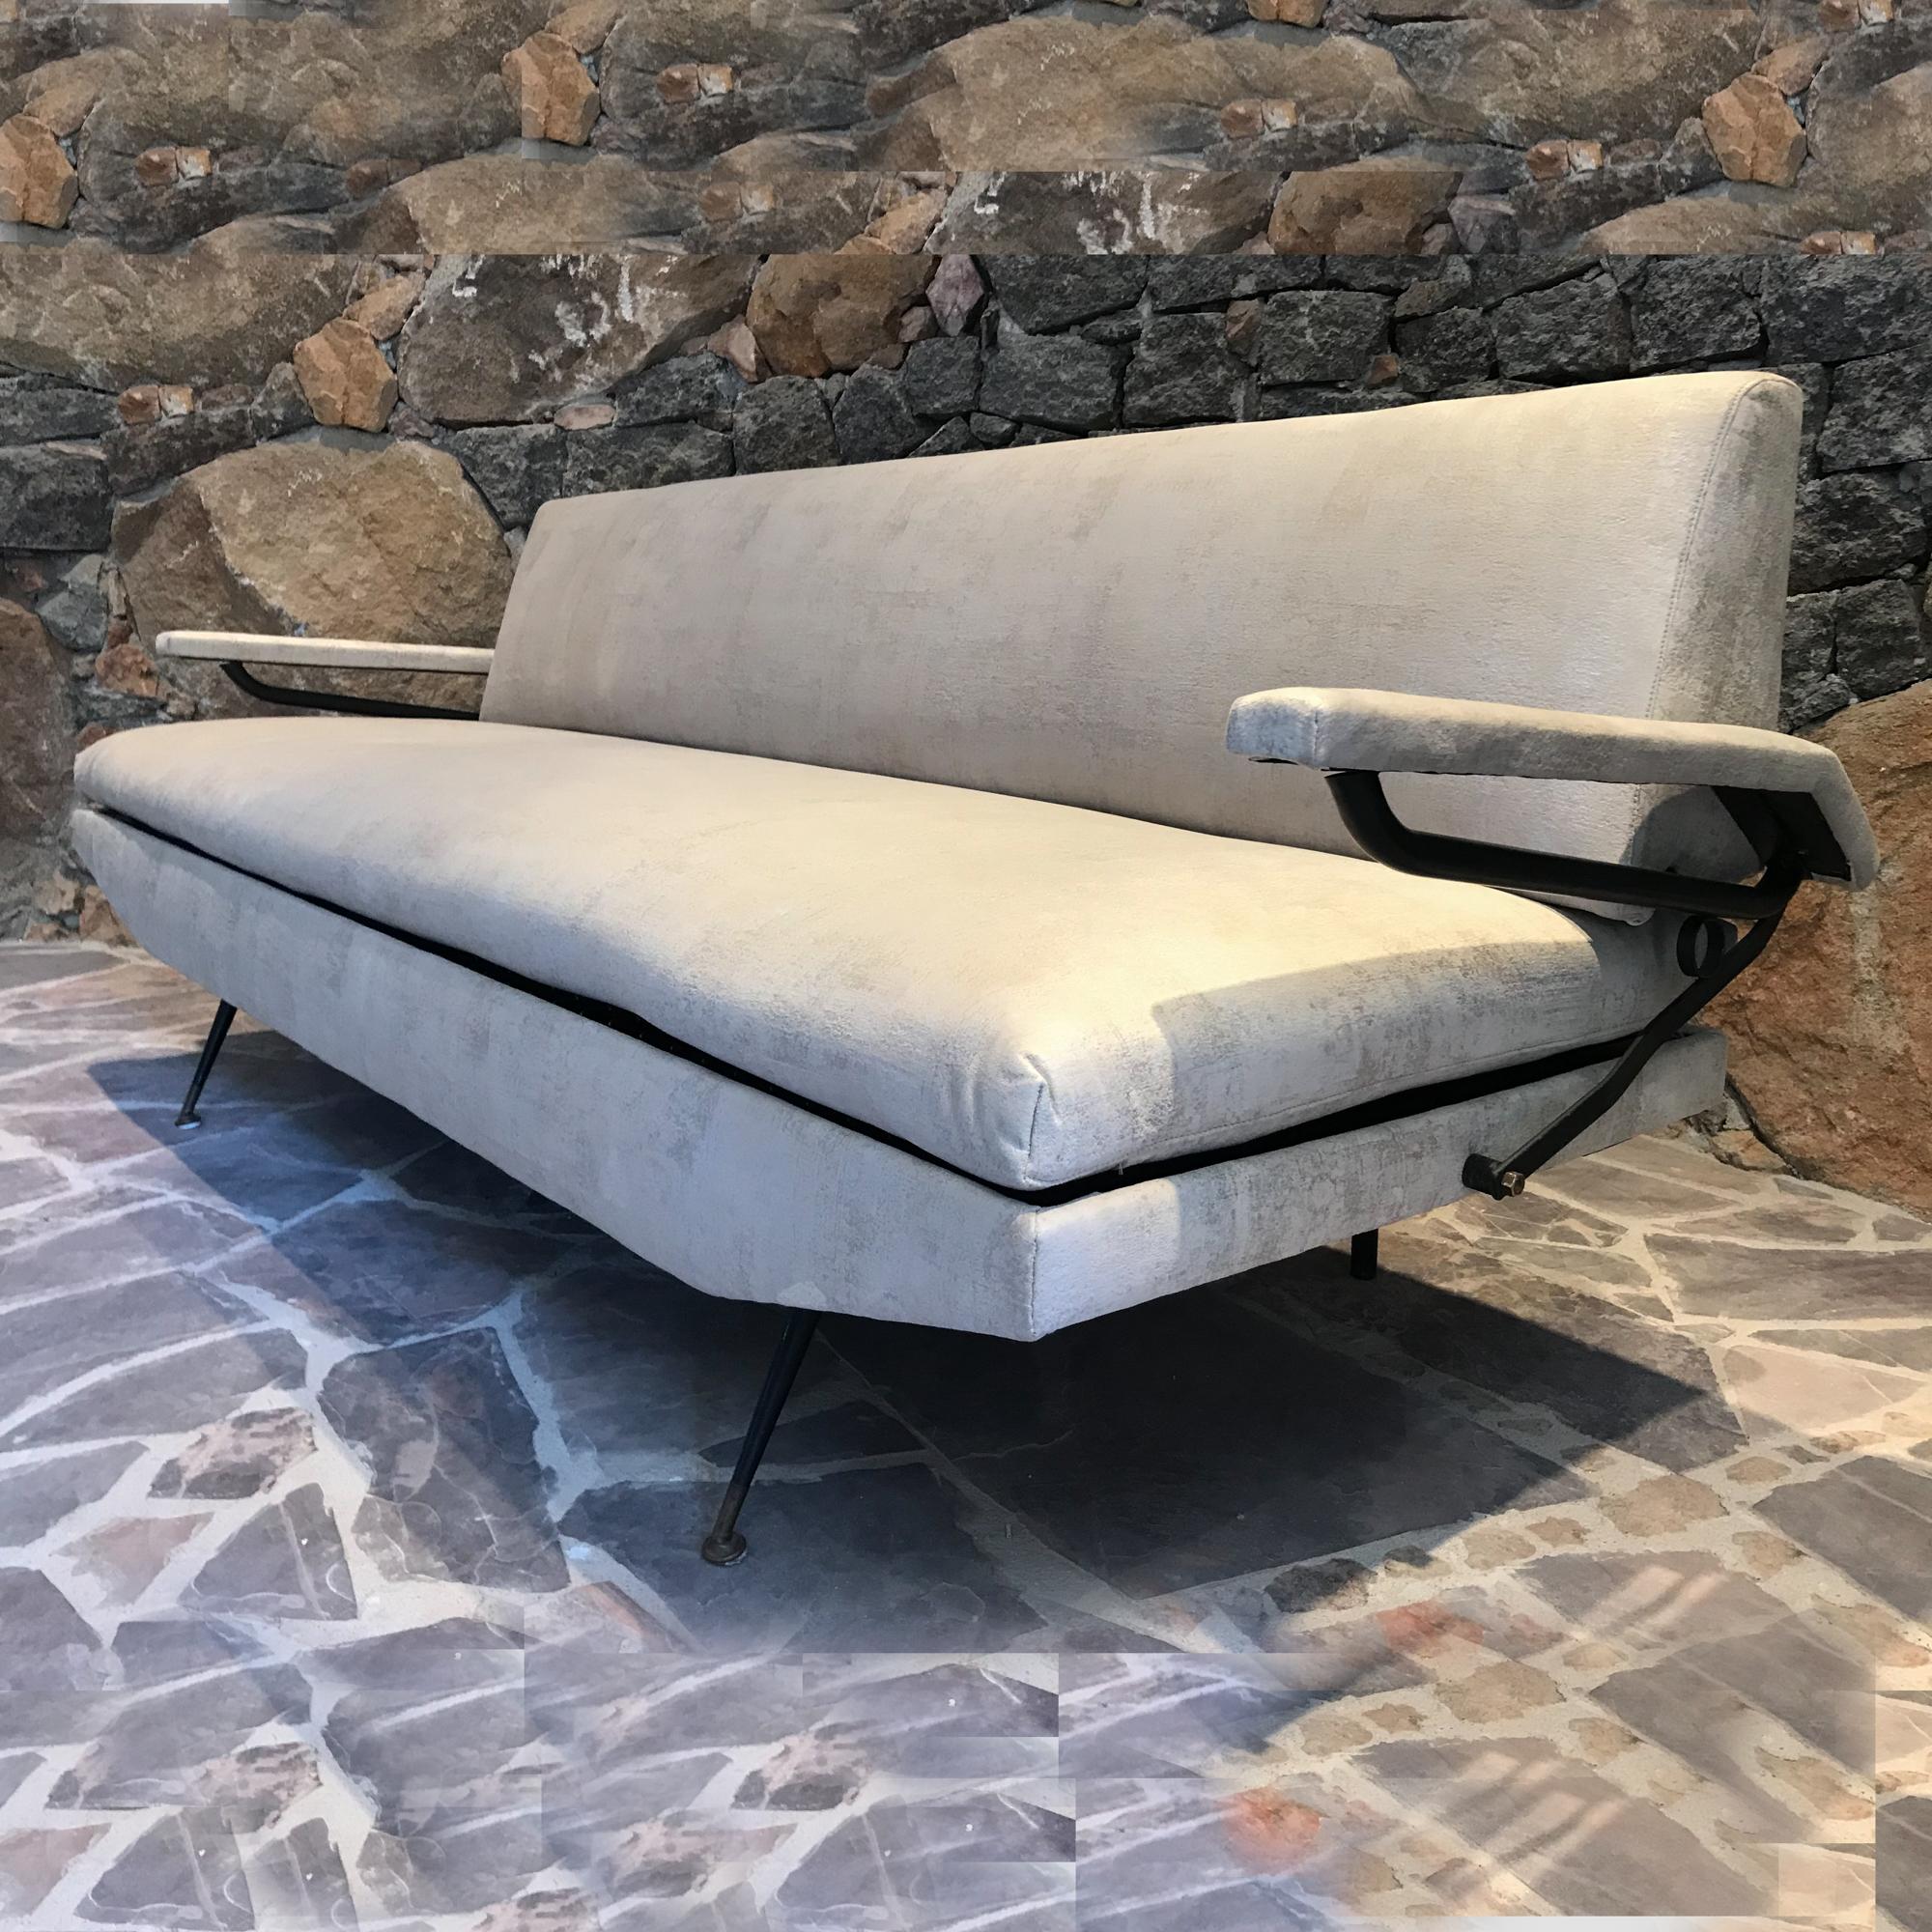 Canapé-lit italien à la manière de l'architecte designer Osvaldo Borsani.
Fer et bois.
Non marqué.
Fabriqué en Italie. 
Les bras peuvent être relevés, offrant ainsi plus d'espace pour se prélasser et faire la sieste l'après-midi. 
Le lit de jour a